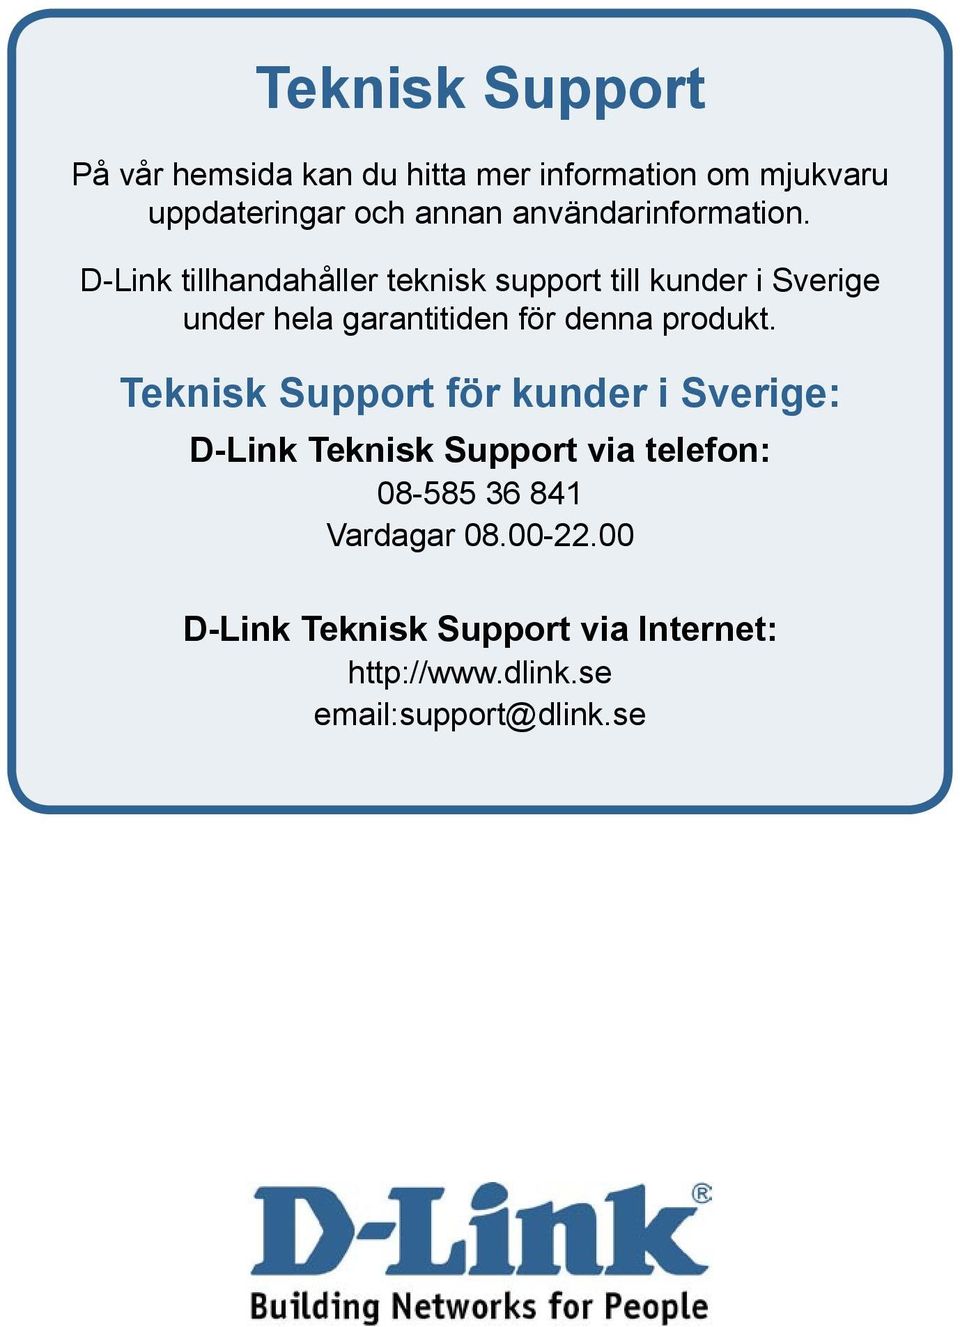 D-Link tillhandahåller teknisk support till kunder i Sverige under hela garantitiden för denna produkt.